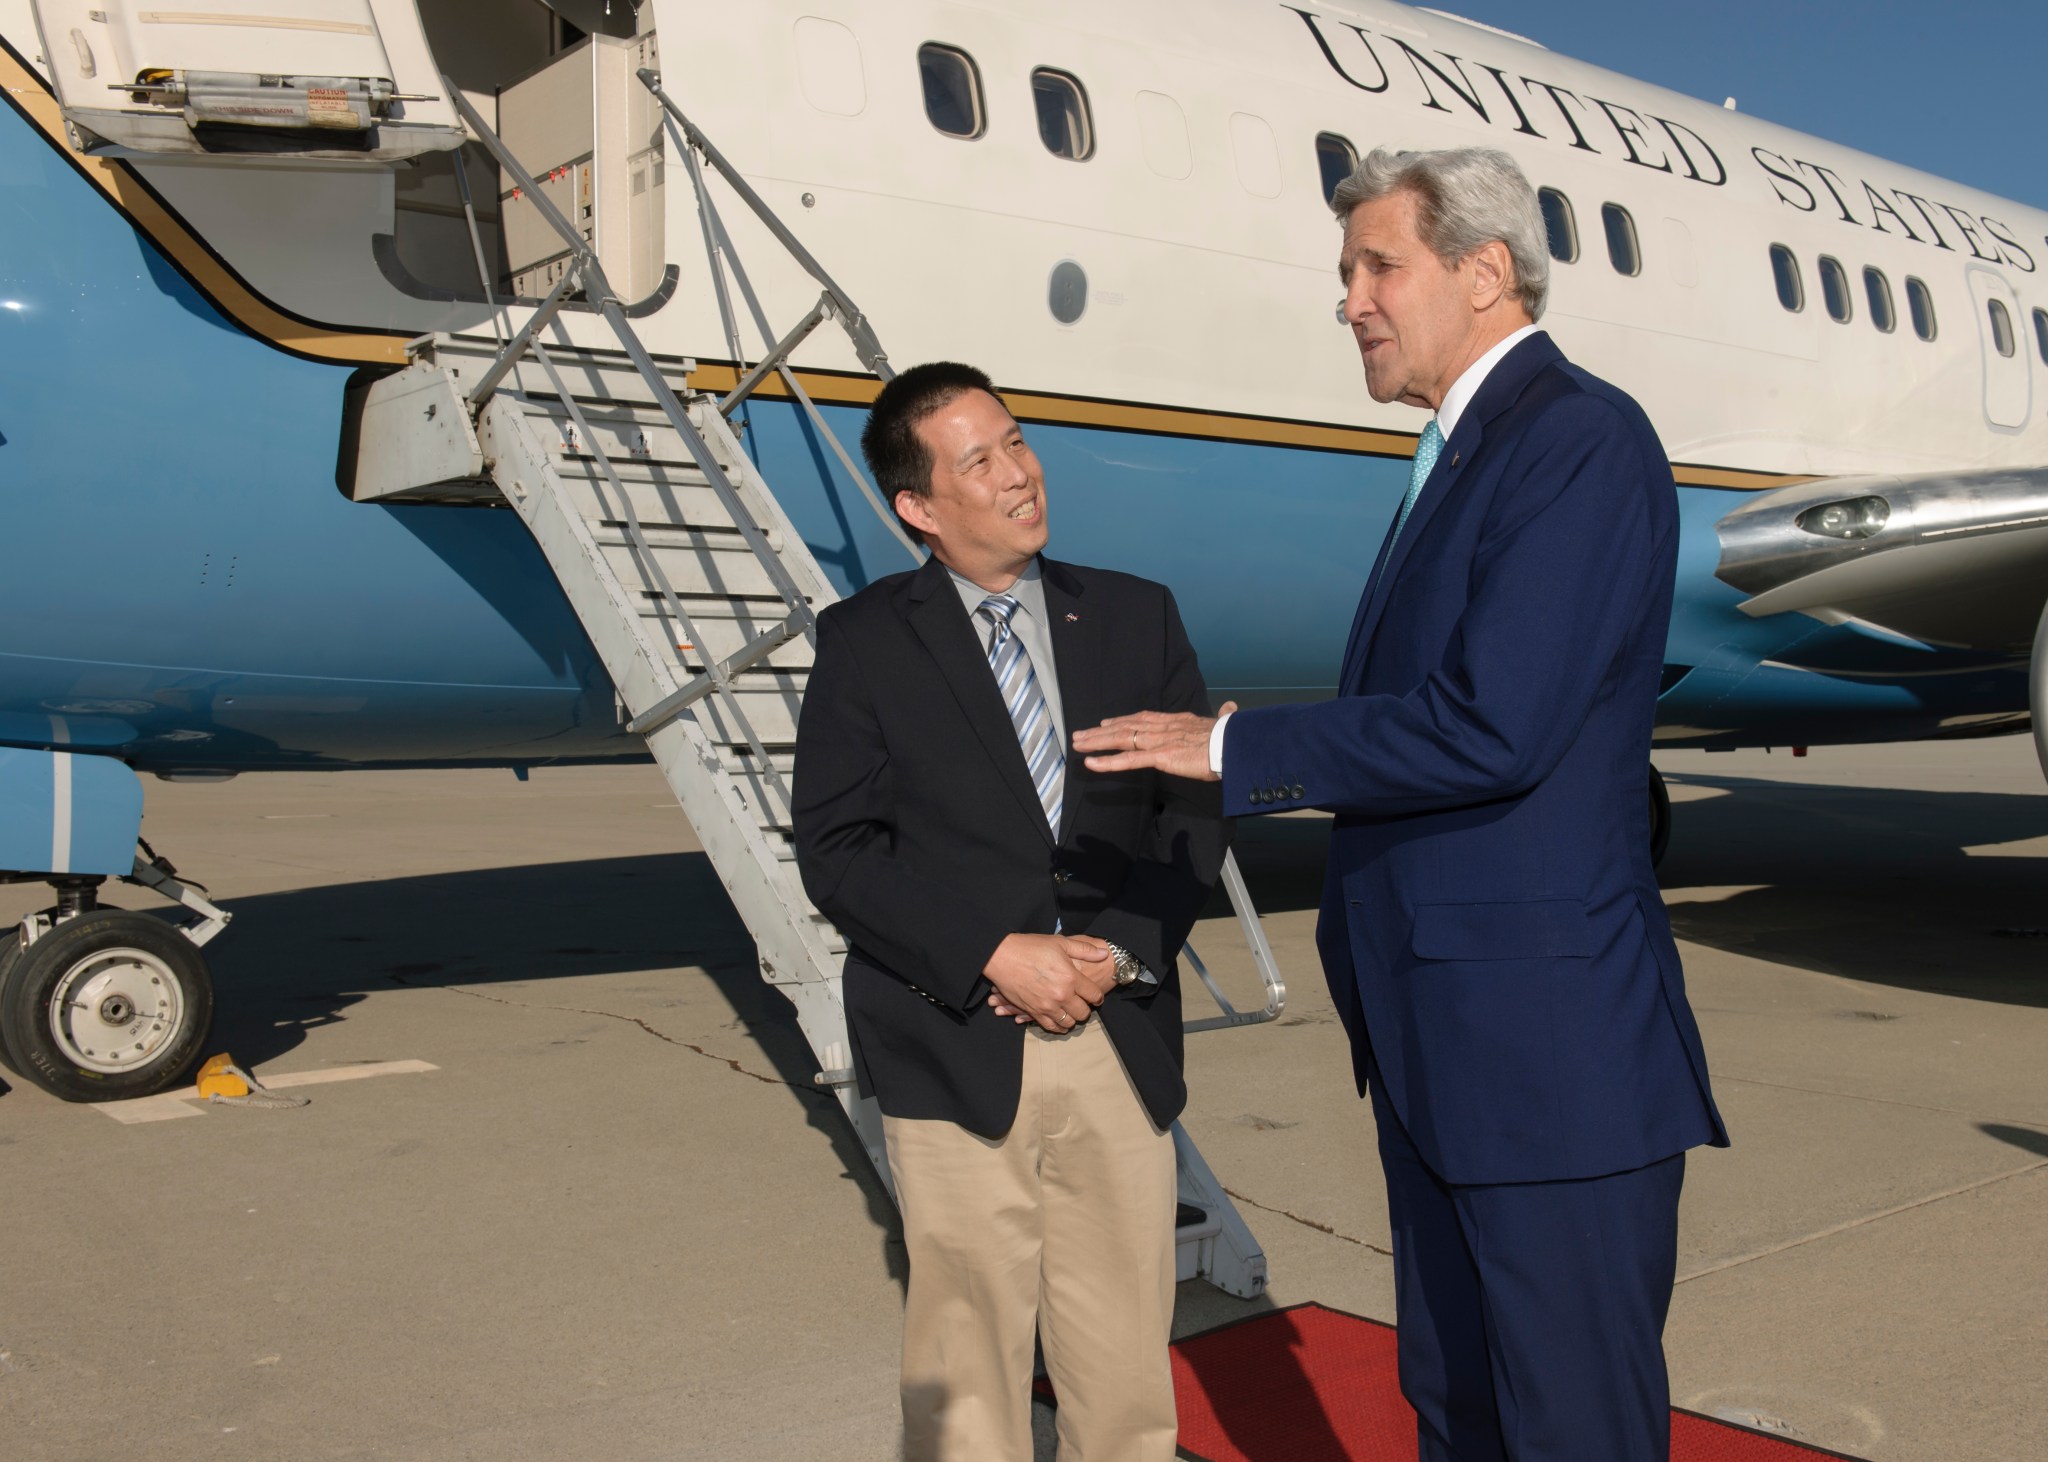 John Kerry lands at Moffett